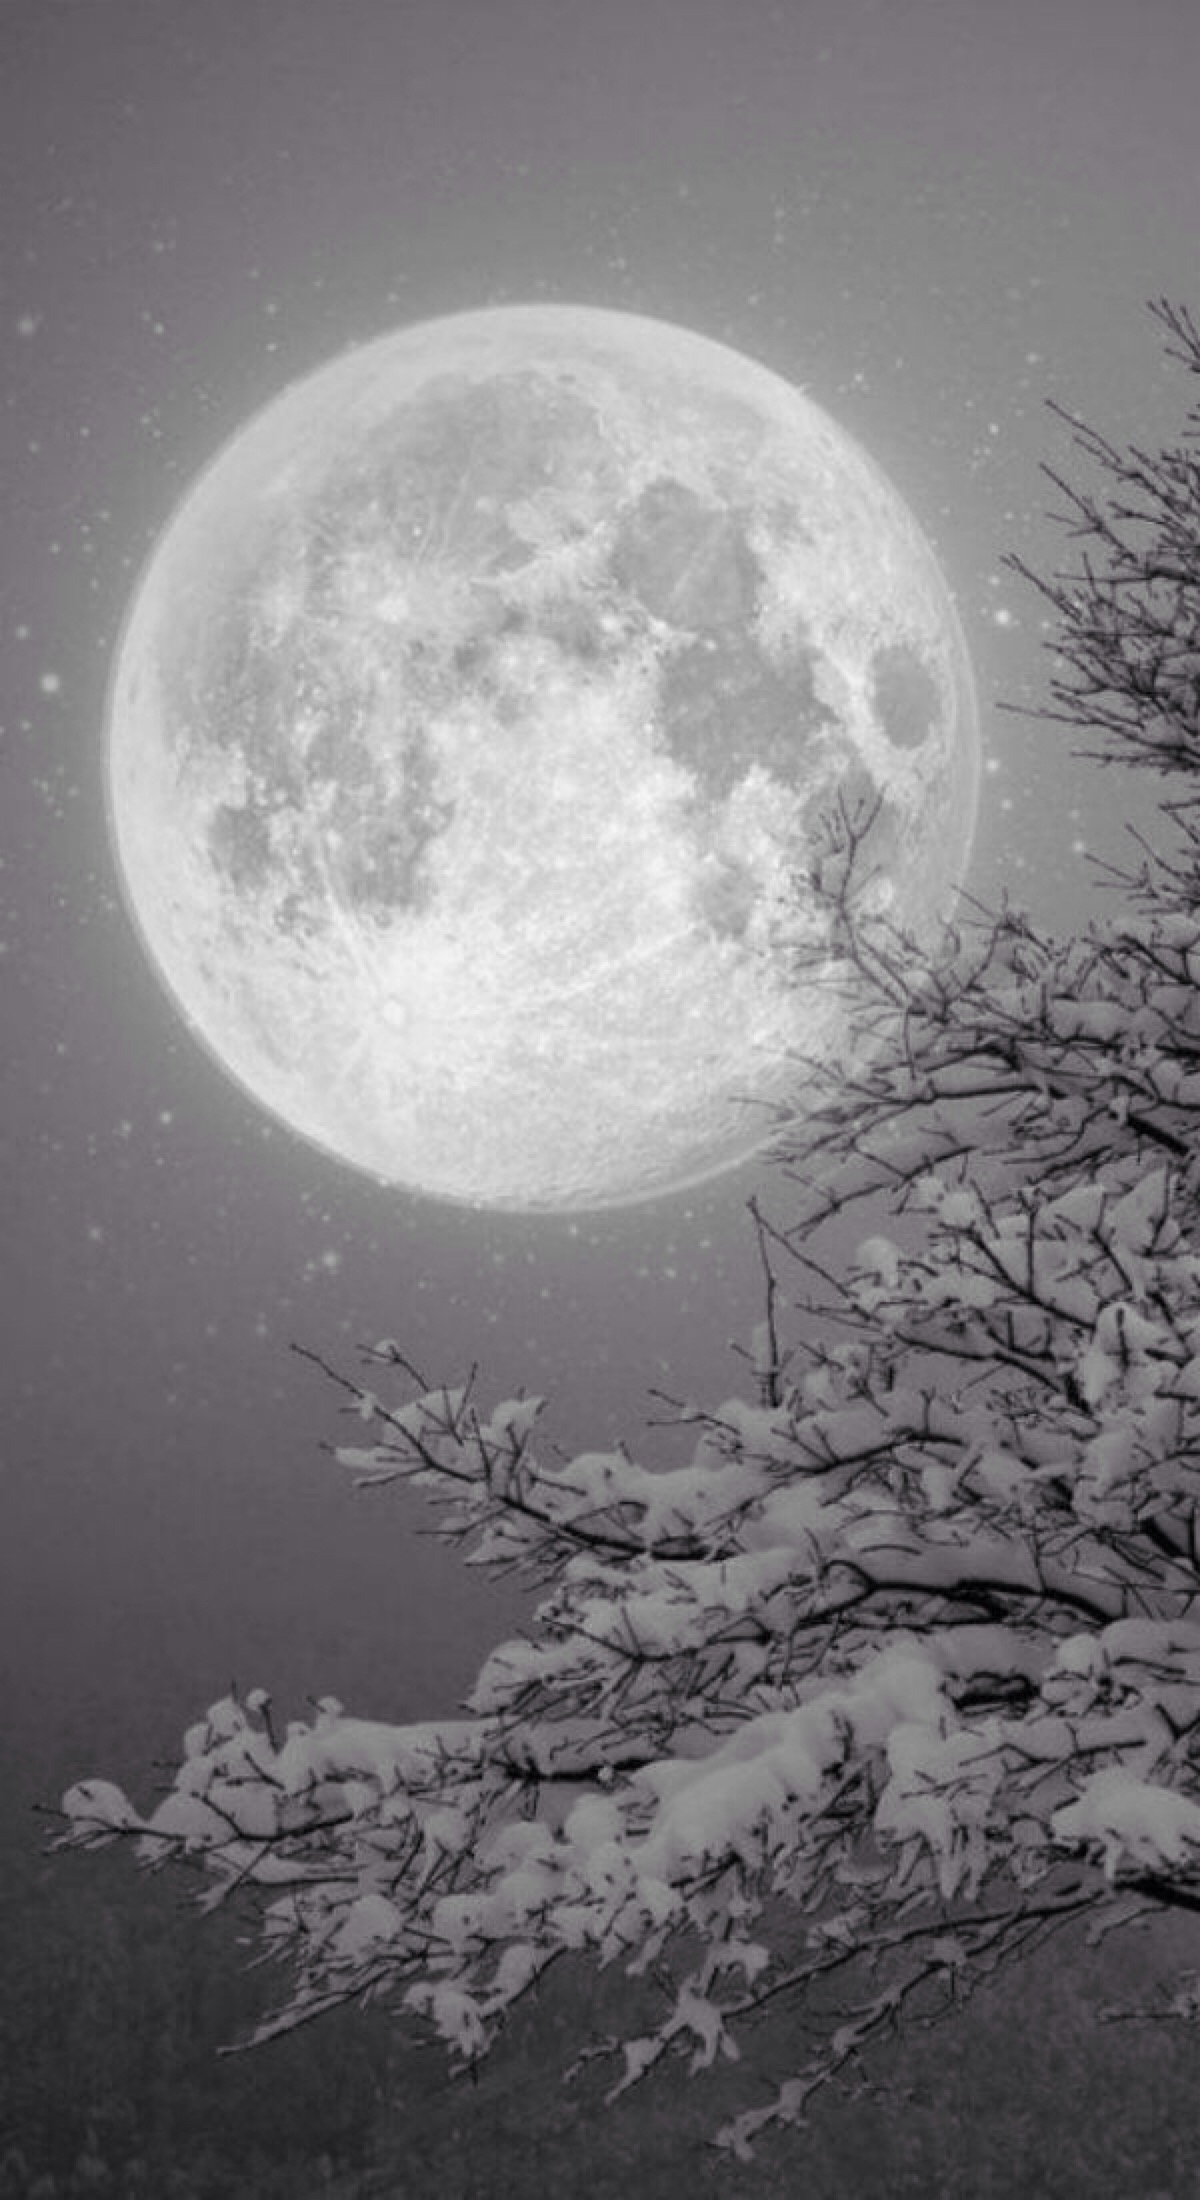 唯美夜景夜空雪景明月自然风景iphone 堆糖 美图壁纸兴趣社区